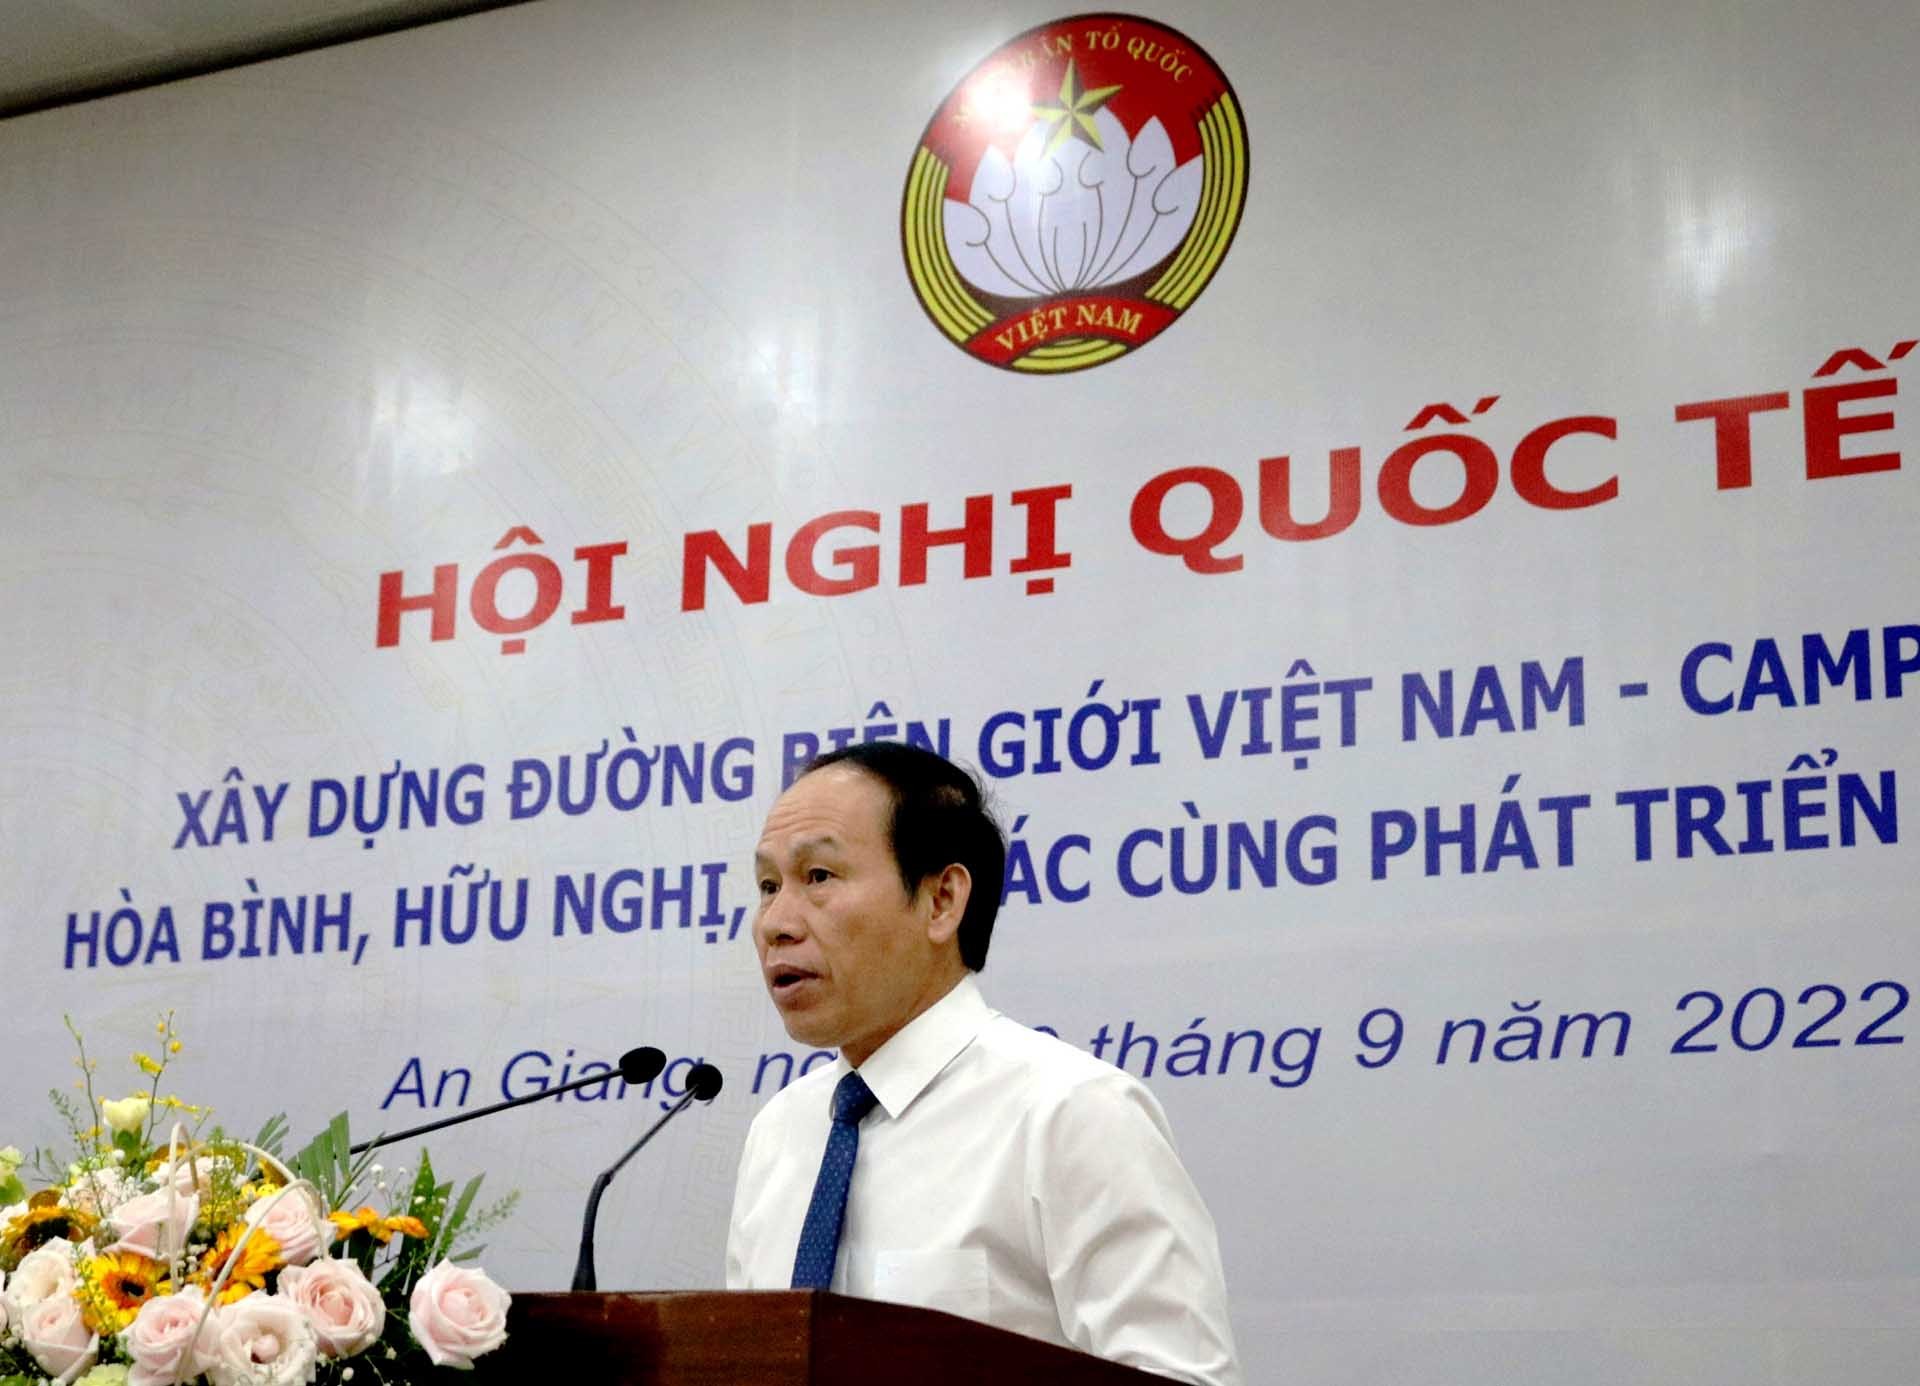 Ông Lê Tiến Châu, Phó Chủ tịch, Tổng thư ký Ủy ban Trung ương Mặt trận Tổ quốc Việt Nam, phát biểu khai mạc hội nghị. (Ảnh: Chiến Khu)